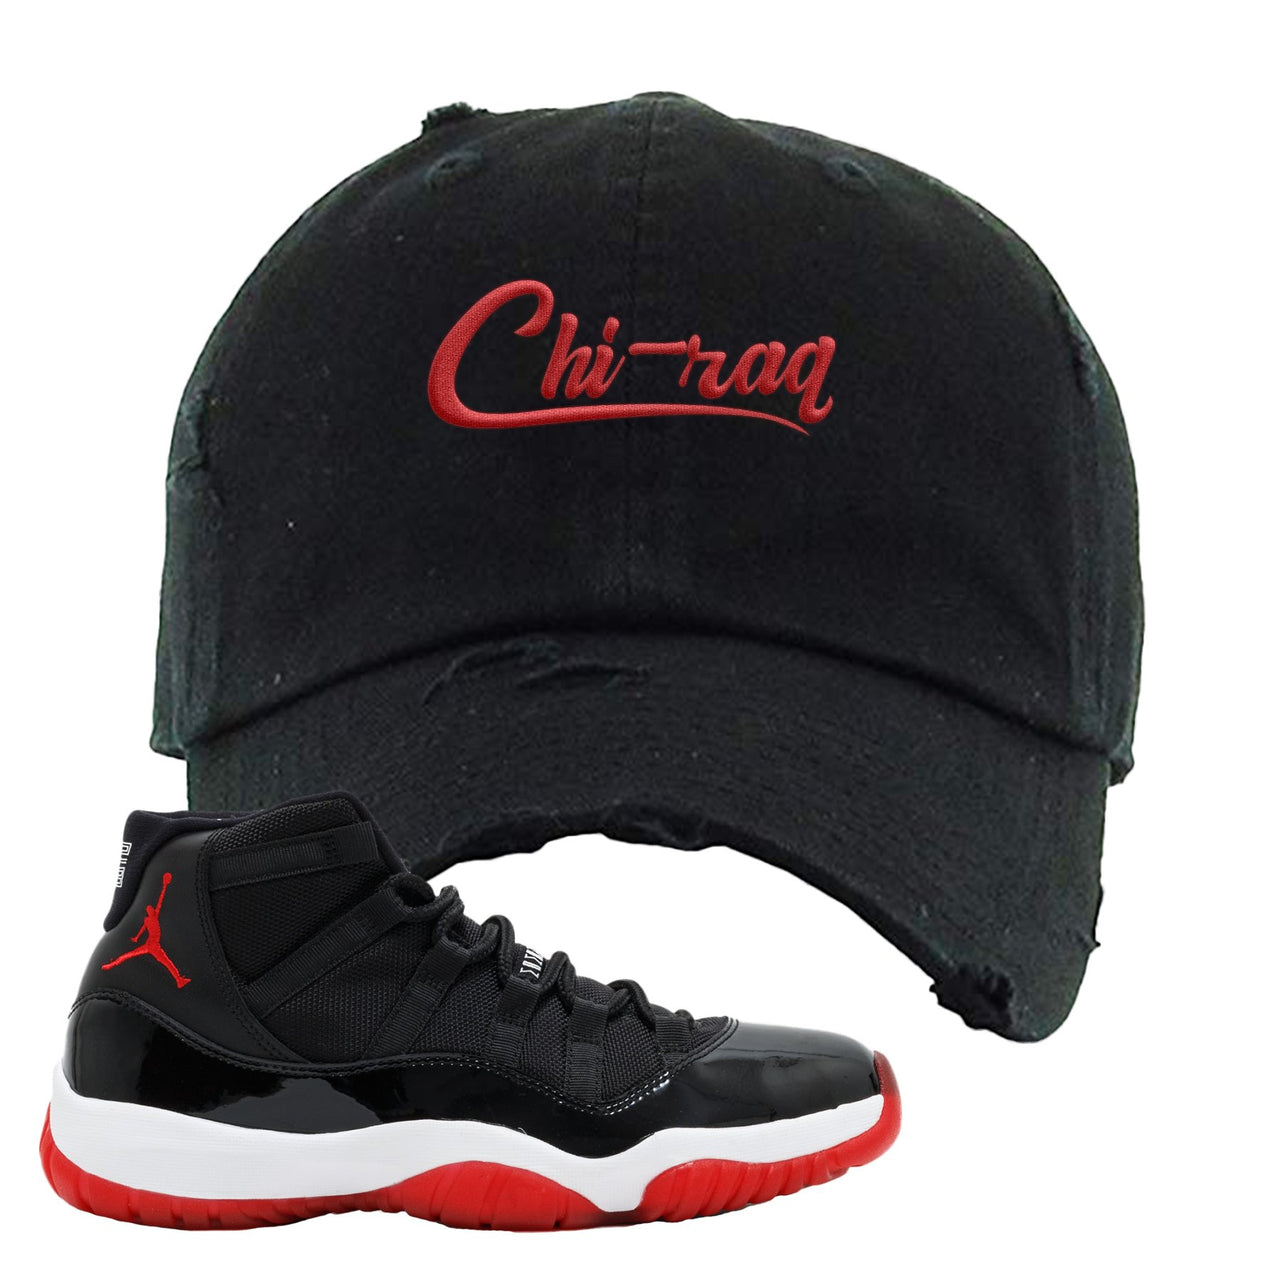 Jordan 11 Bred Chi-raq Black Sneaker Hook Up Distressed Dad Hat